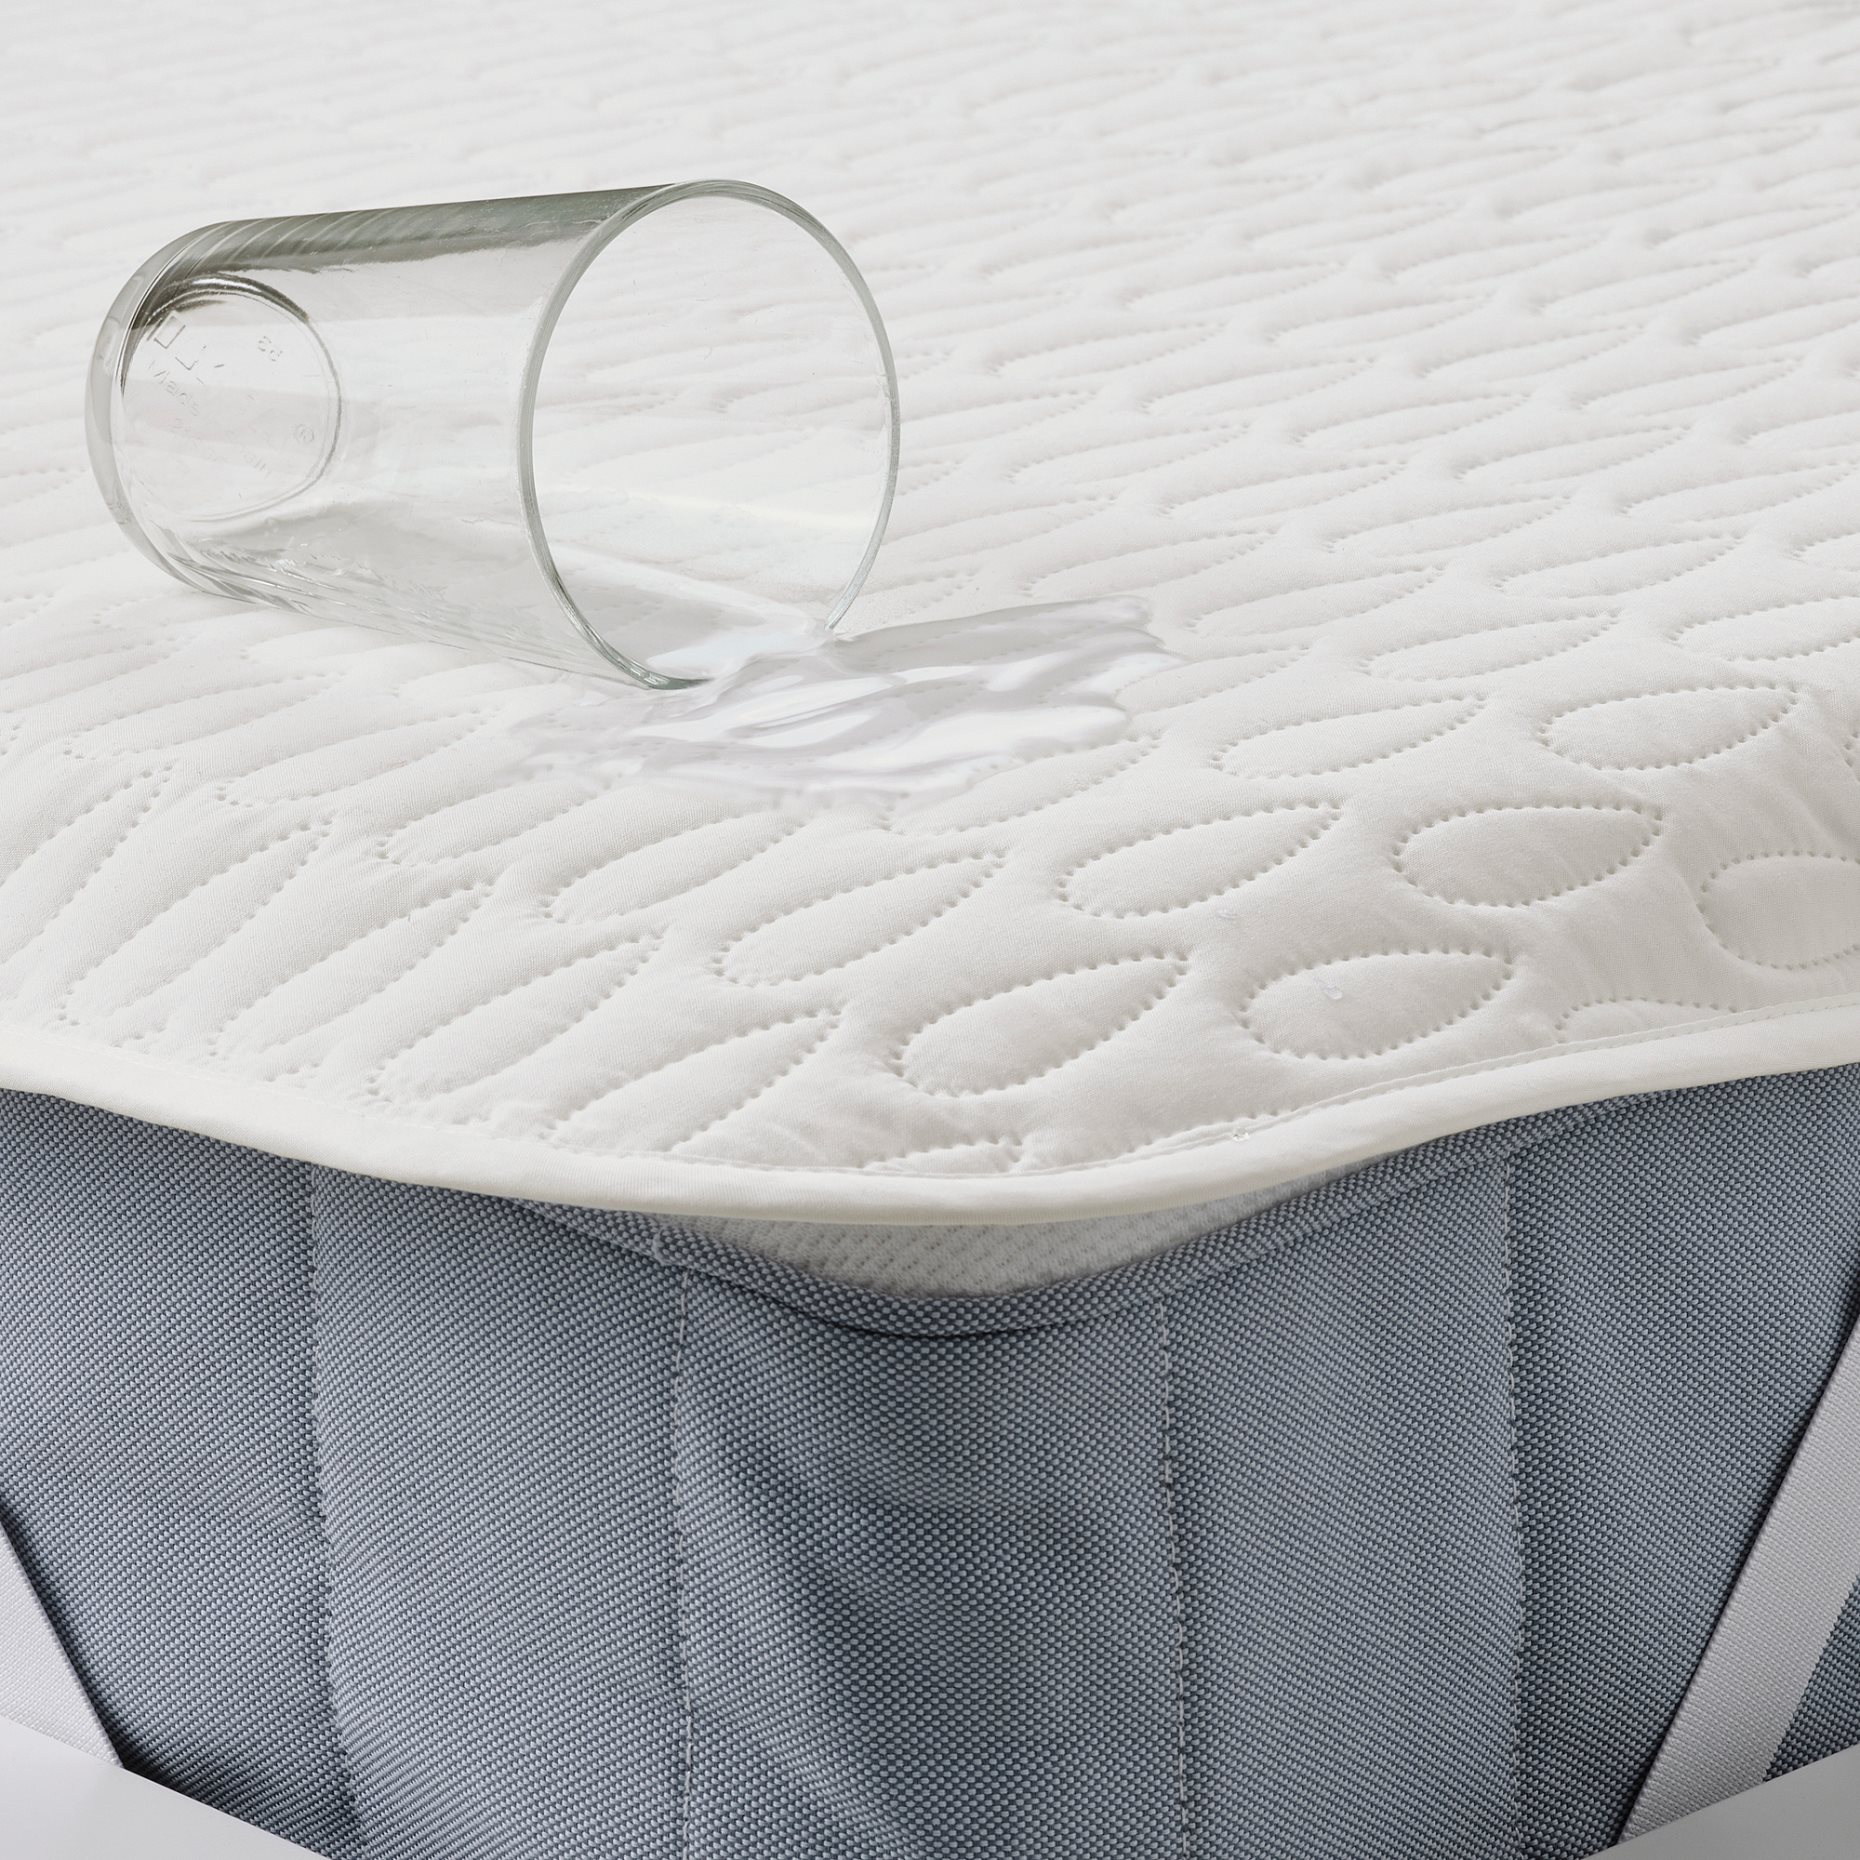 SOTNÄTFJÄRIL, waterproof mattress protector, 90x200 cm, 105.312.92